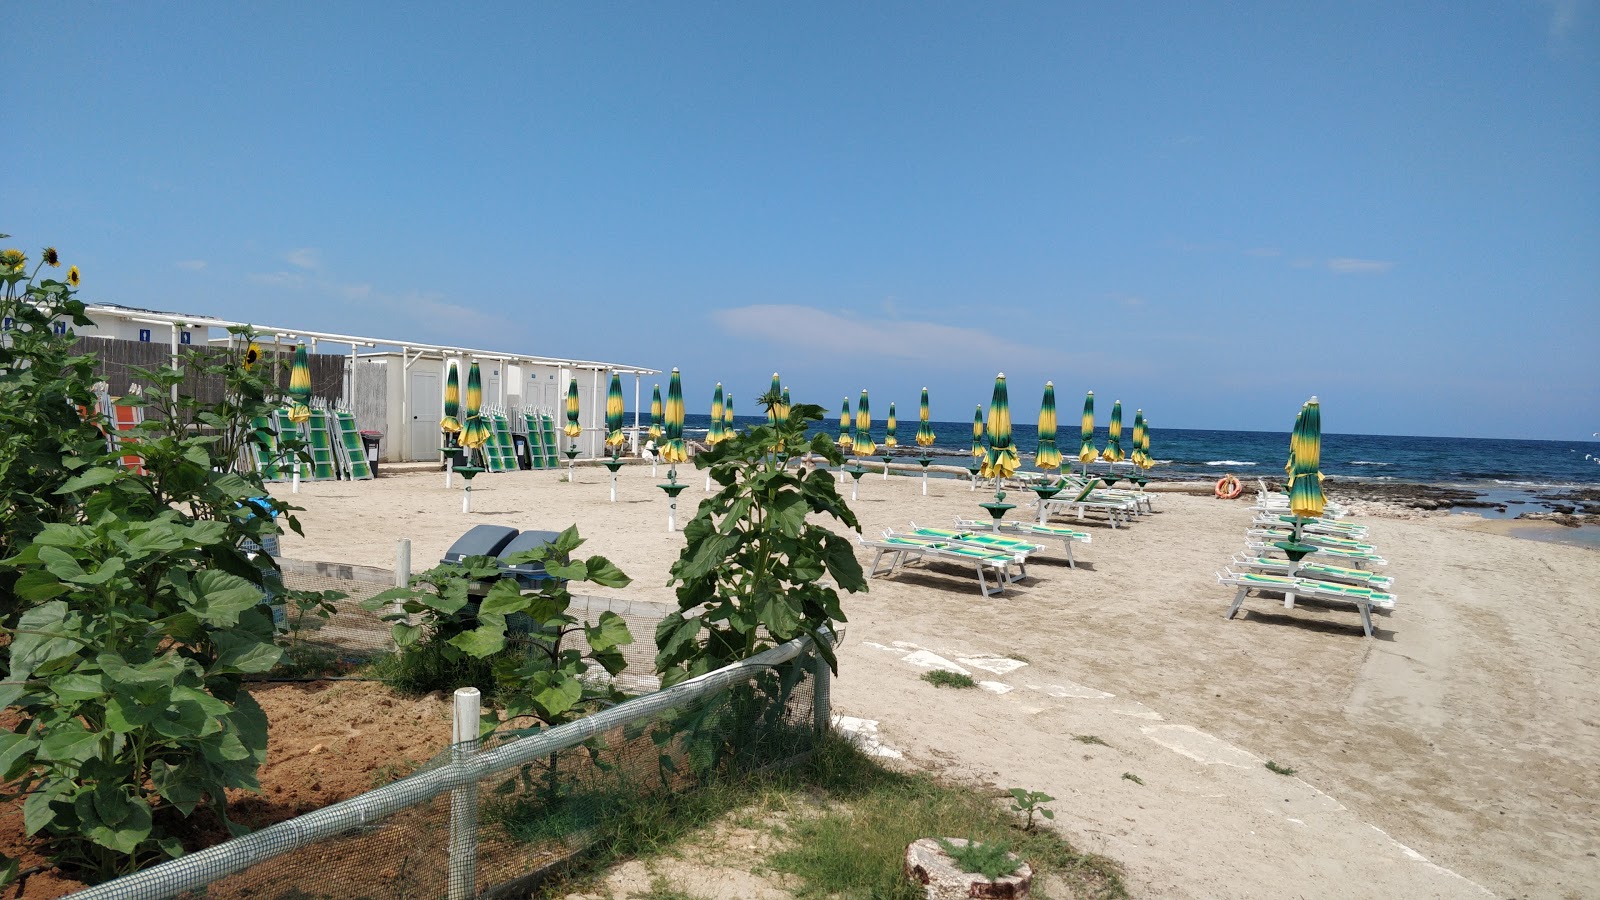 Foto von Spiaggia di Specchiolla mit viele kleine buchten